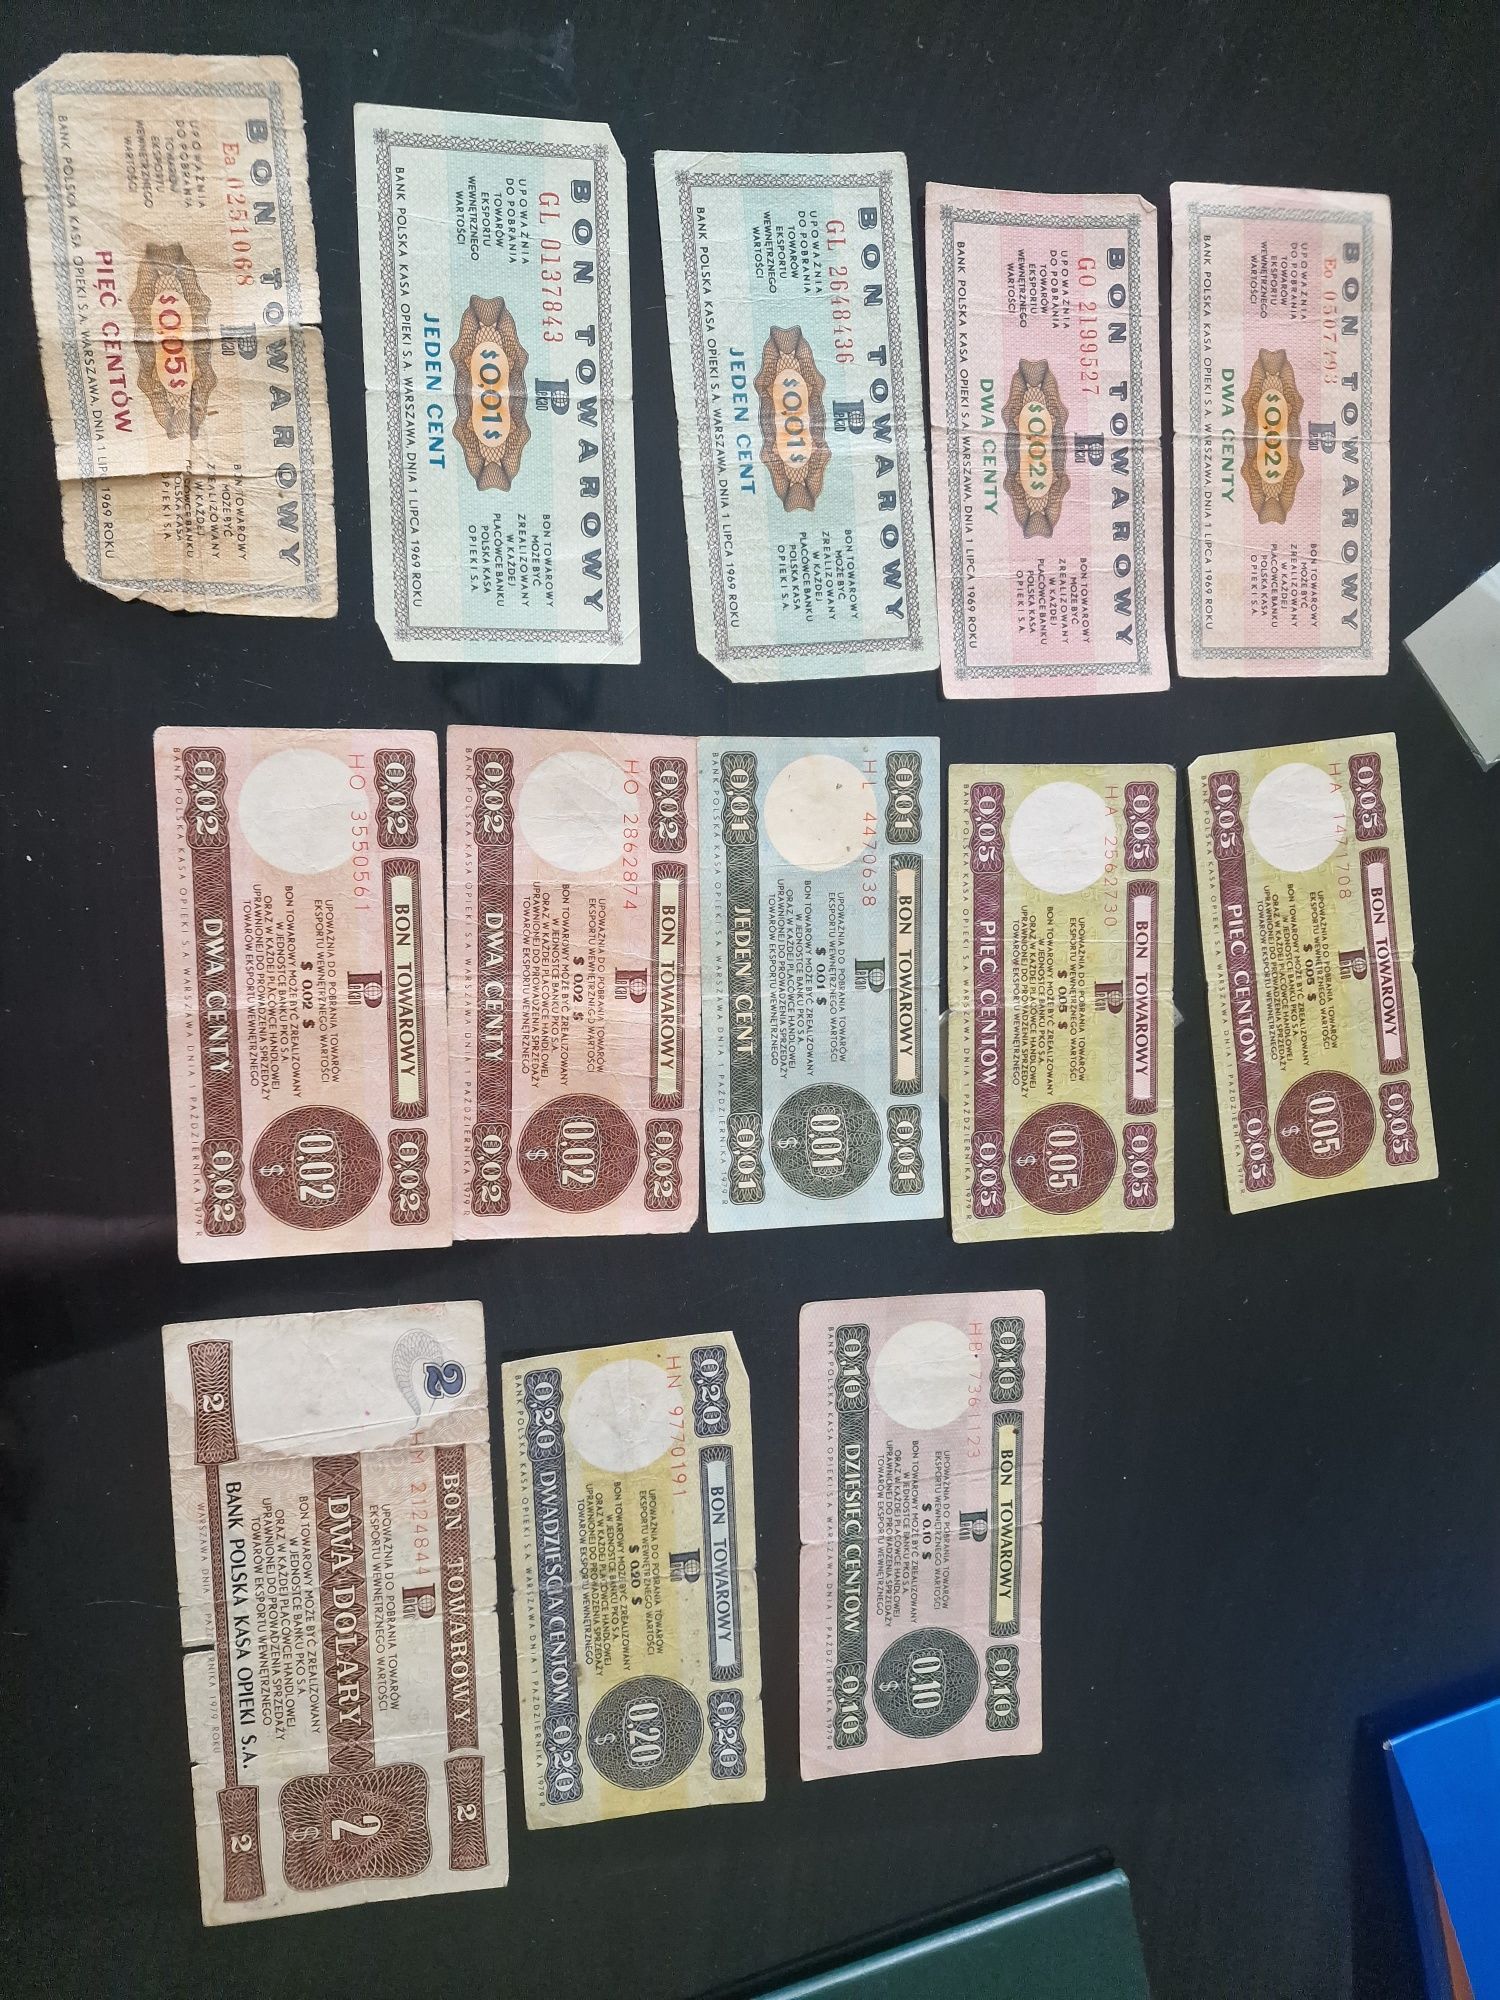 Kolekcja bon towarowy 1979r banknoty